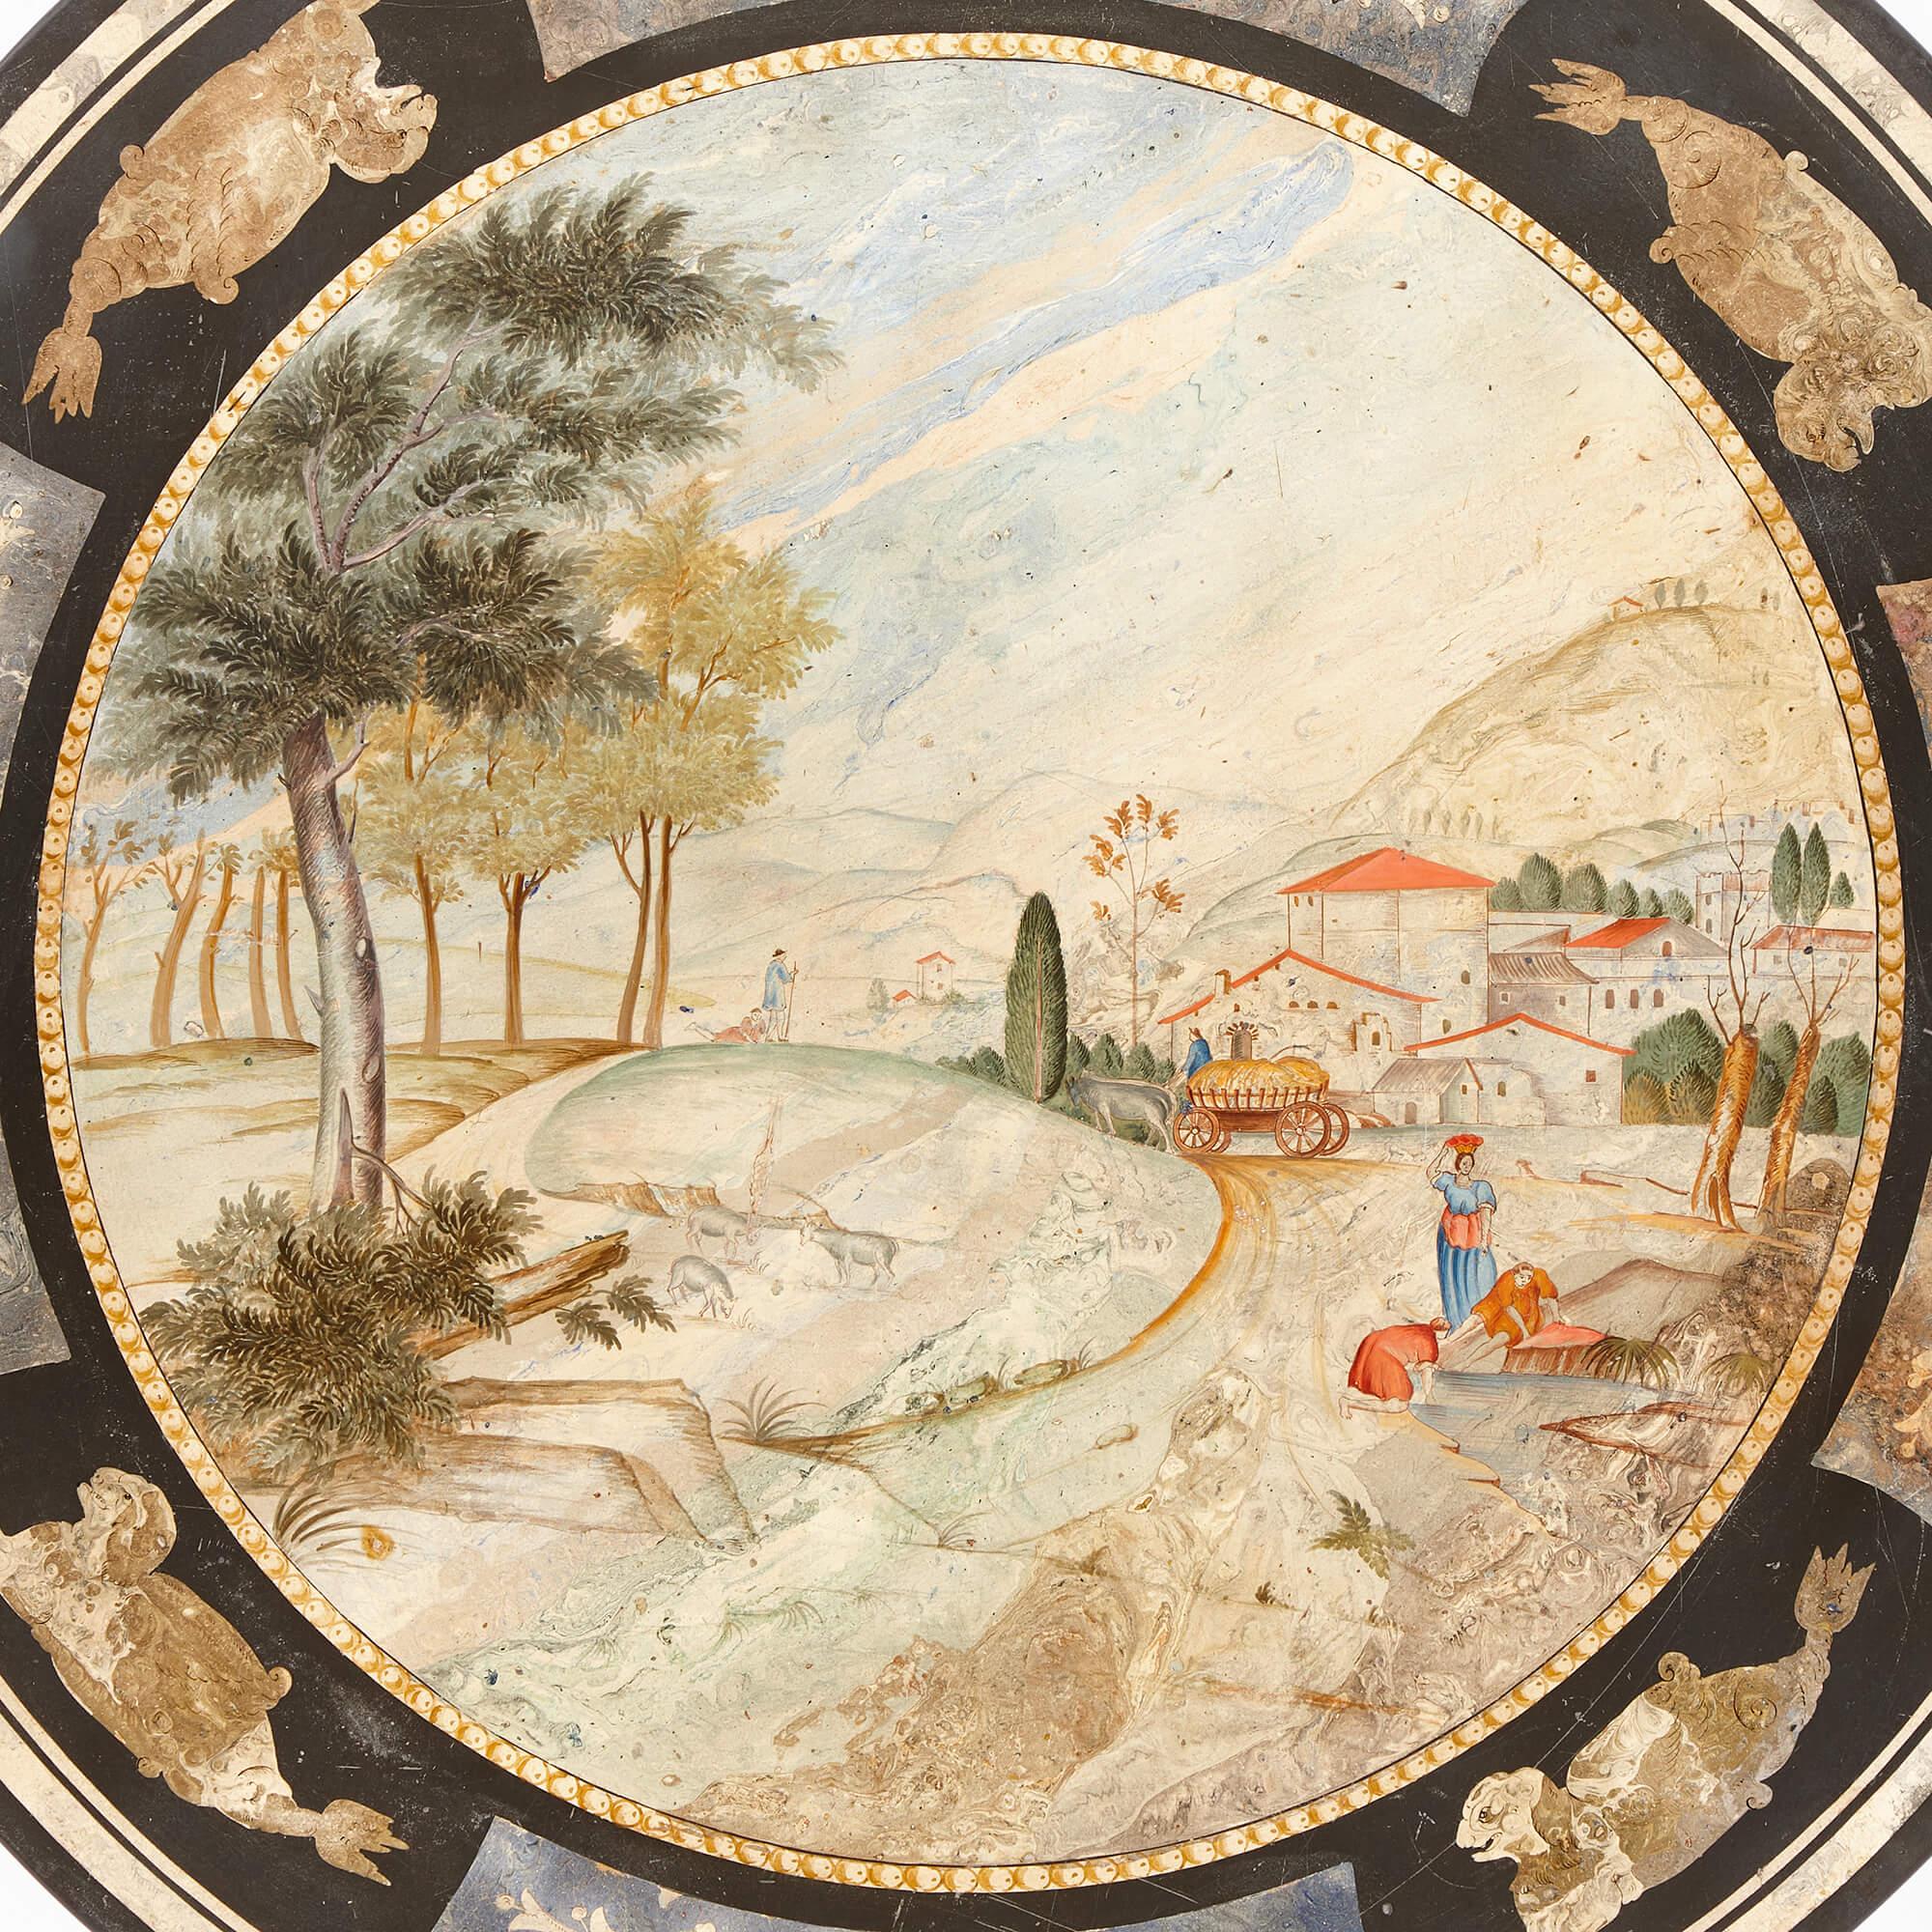 Eine runde italienische antike scagliola-Tischplatte 
Italienisch, 19. Jahrhundert
Höhe 1,5 cm, Durchmesser 90 cm

Diese filigrane runde Tischplatte ist aus Scagliola gefertigt, einem beliebten MATERIAL (eine Variante von Gips), das im